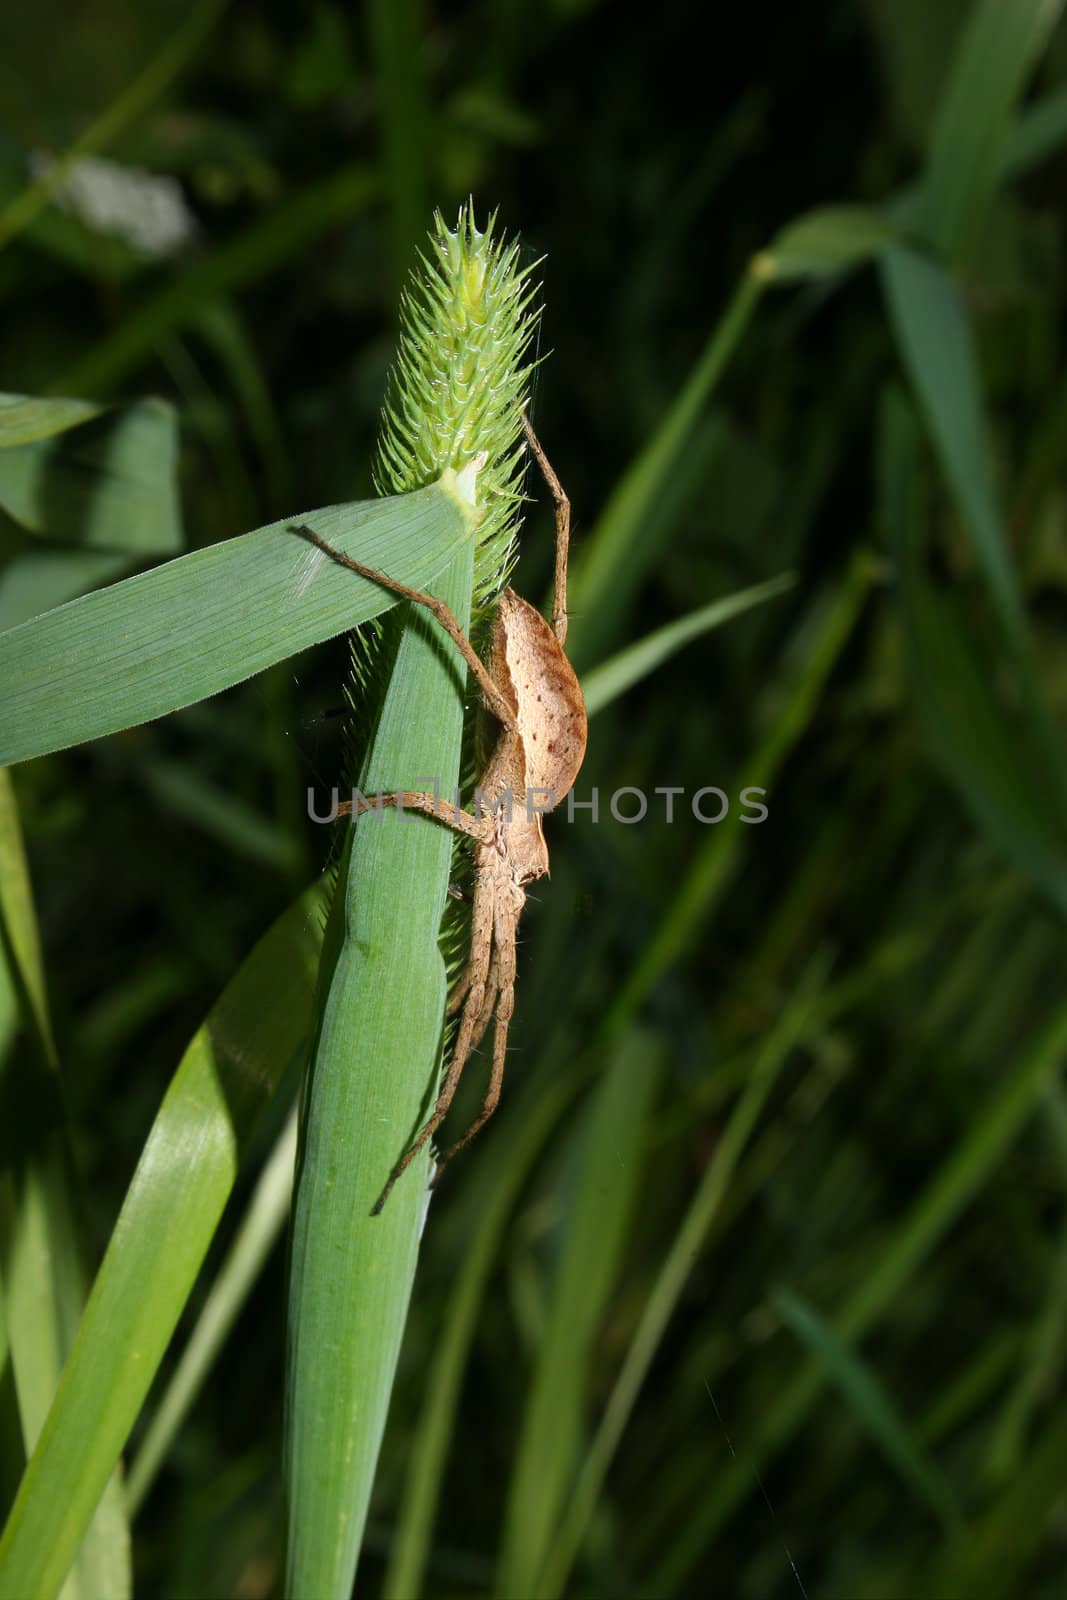 Nursery web spider (Pisaura mirabilis) - Female on a leaf